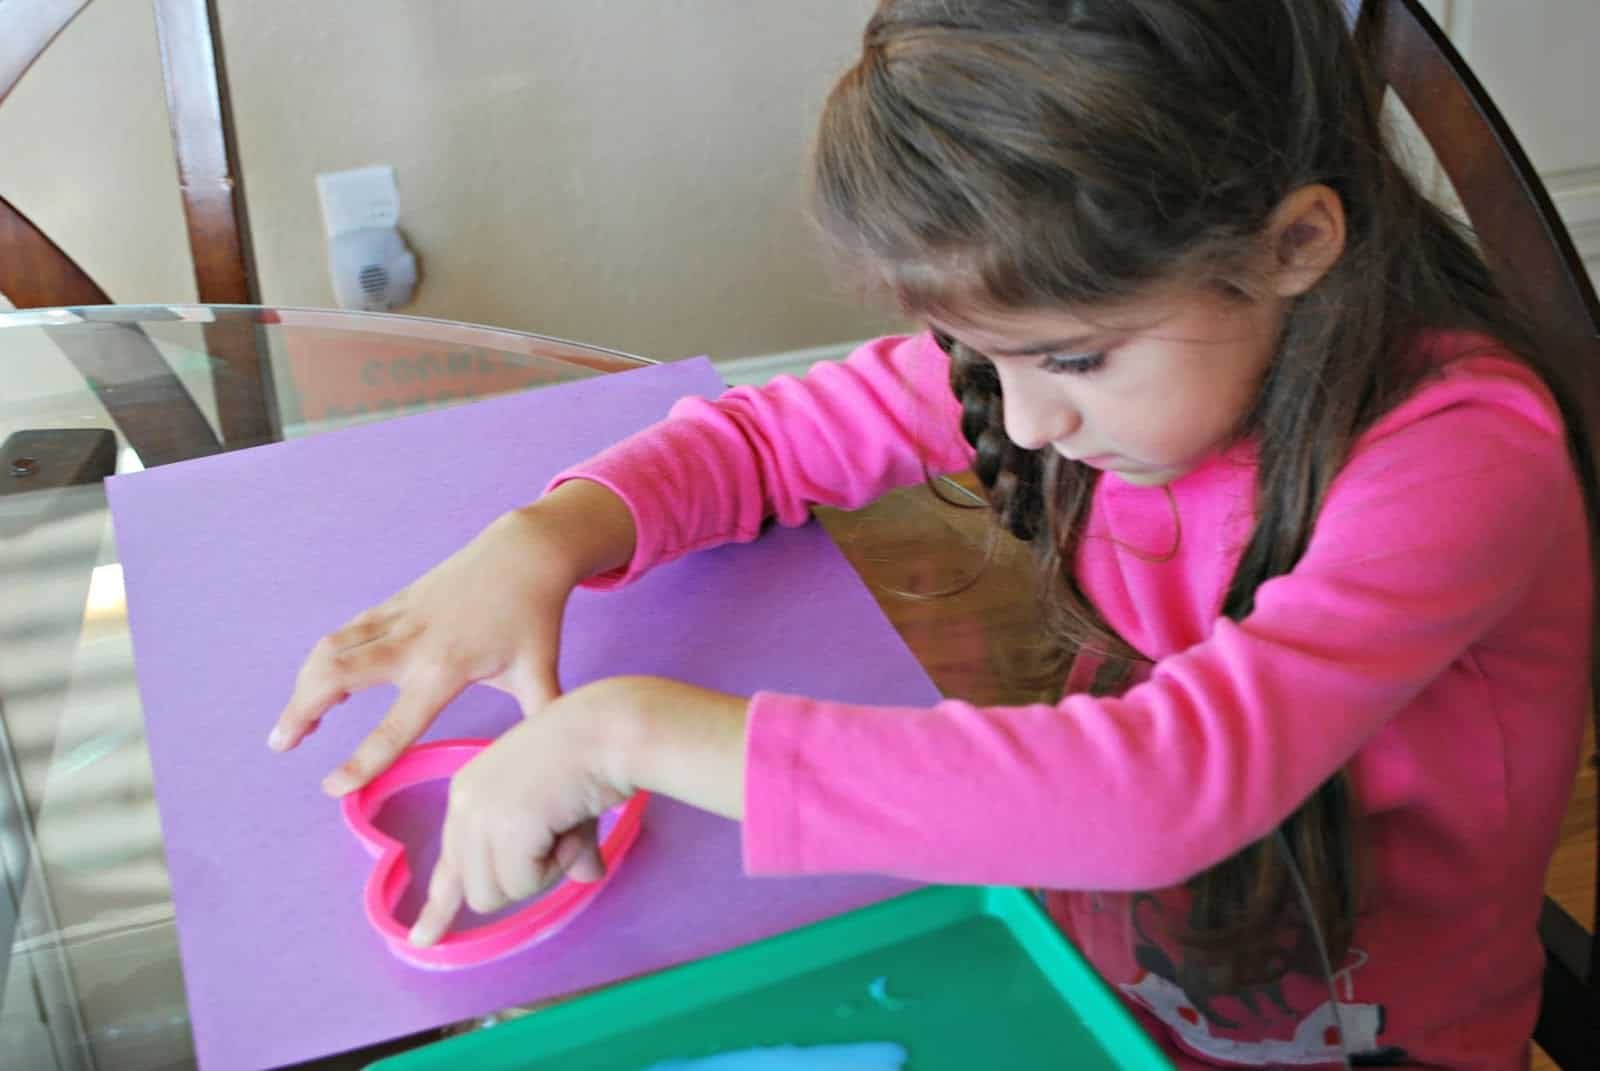 child making a valentine's craft